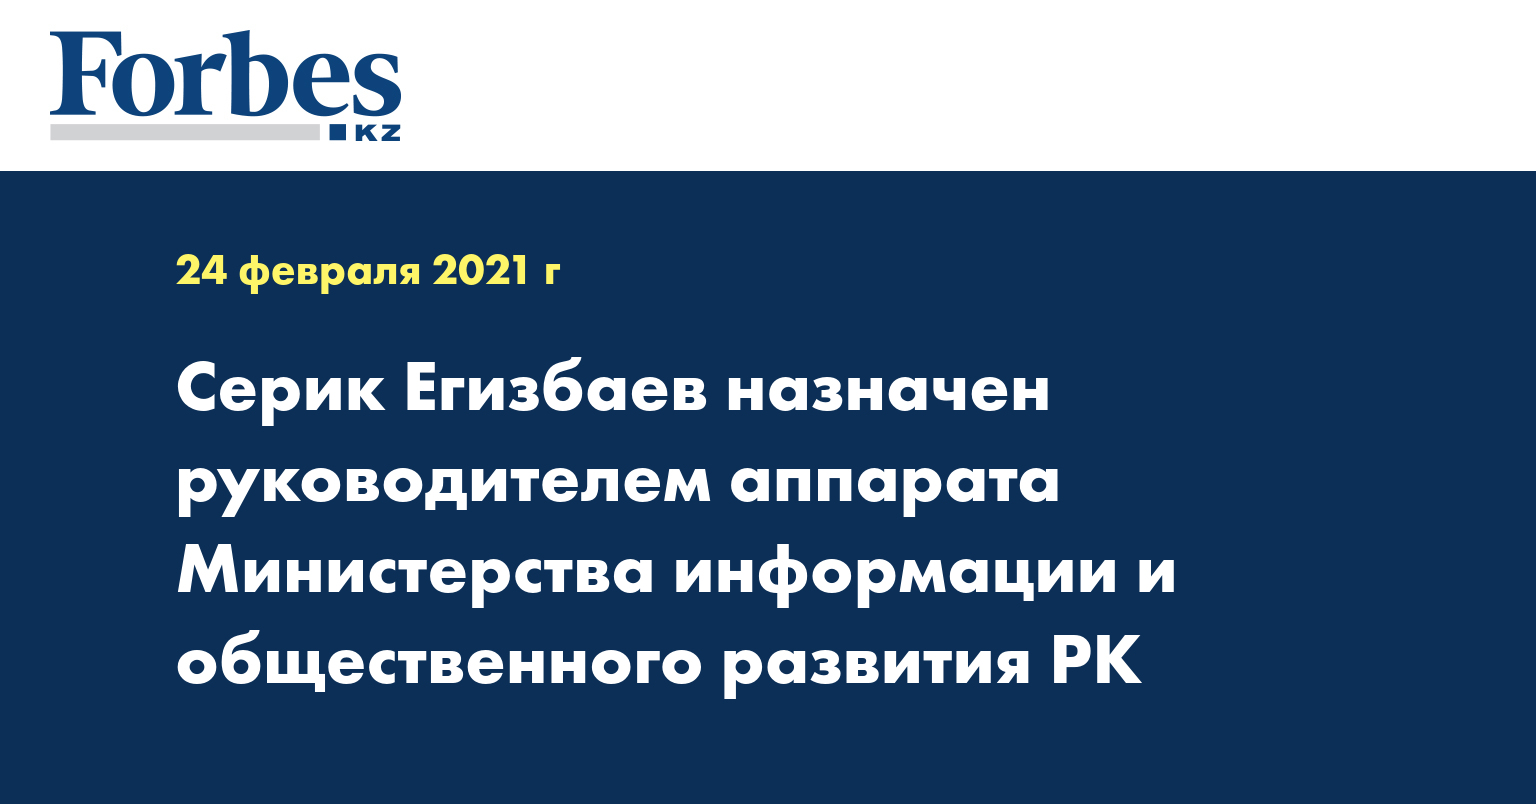 Серик Егизбаев назначен руководителем аппарата Министерства информации и общественного развития РК